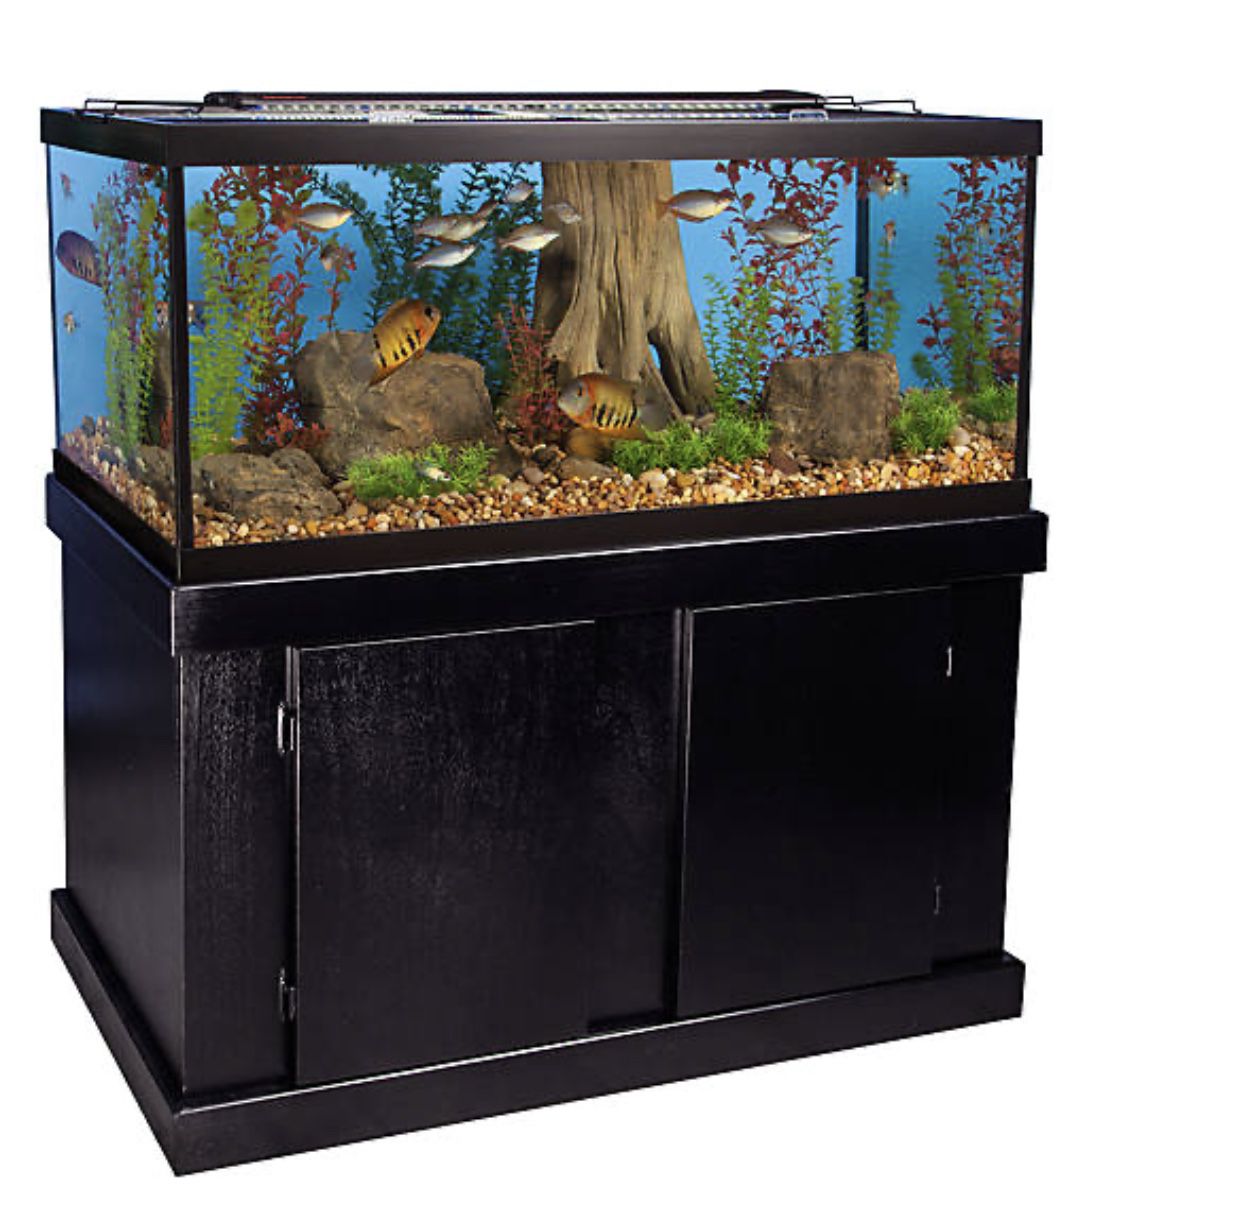 75 gallon aquarium & stand for sale